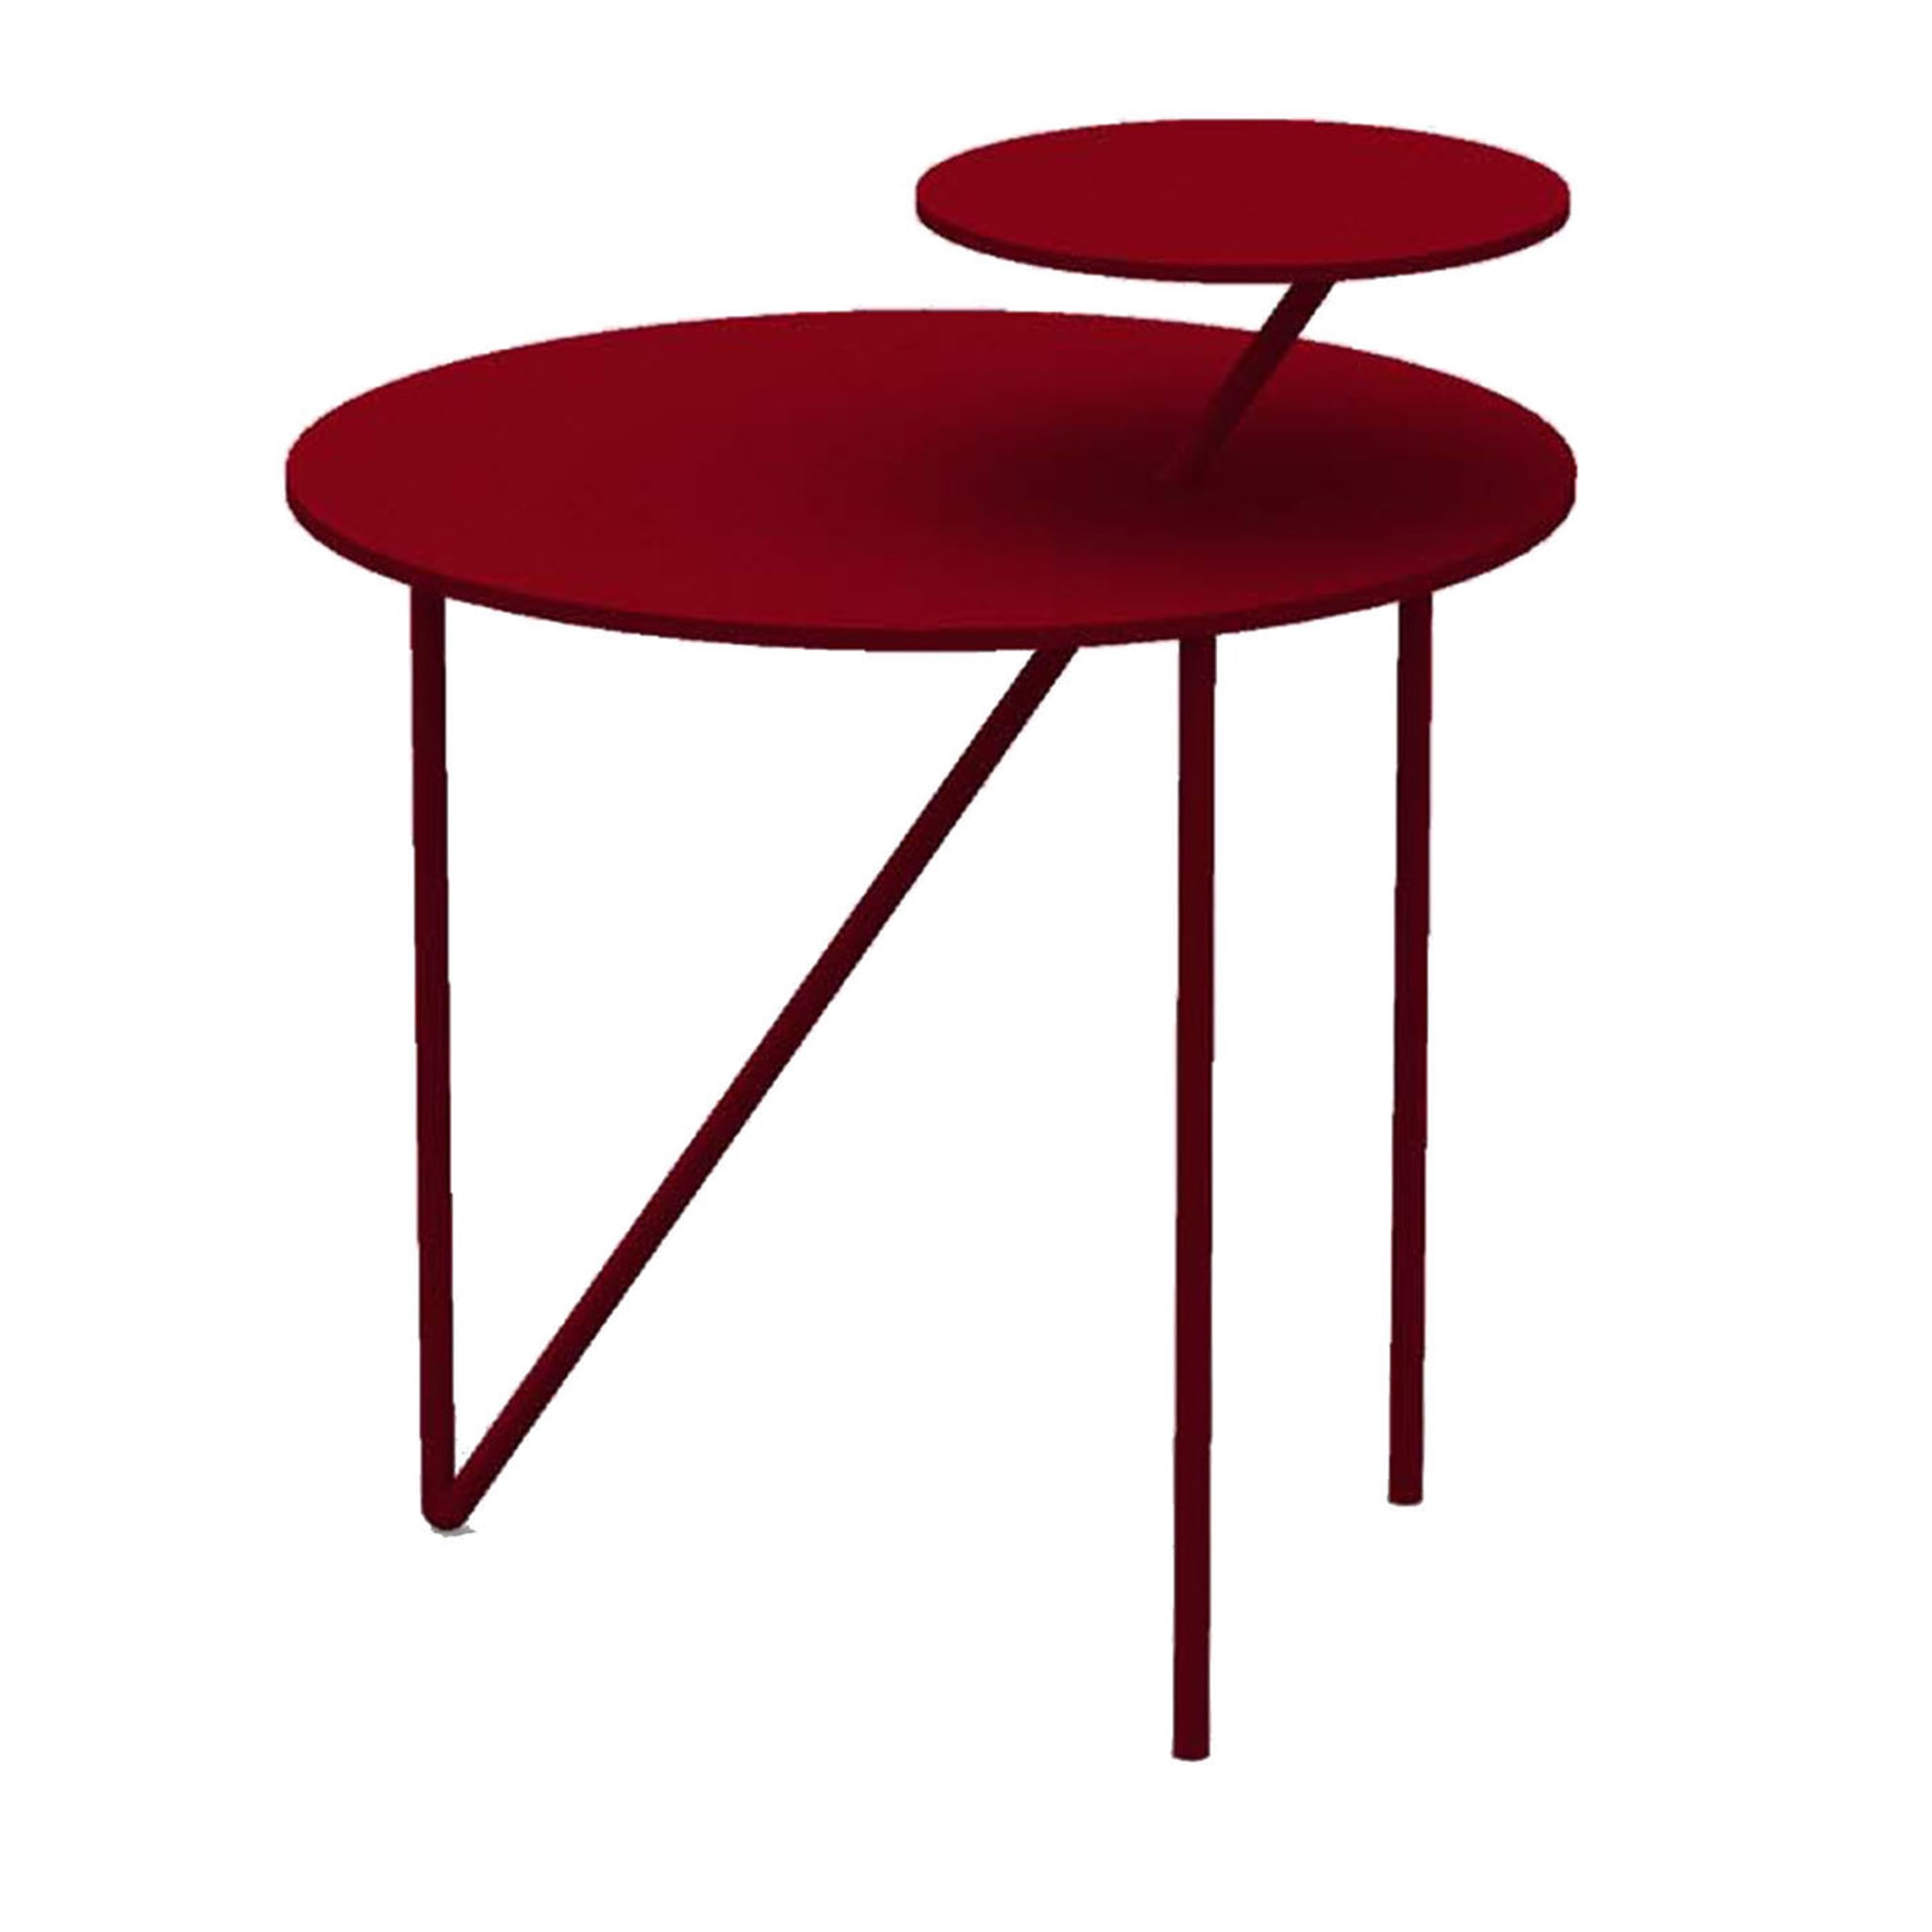 Tavolino basso Passante rosso rubino - Vista principale